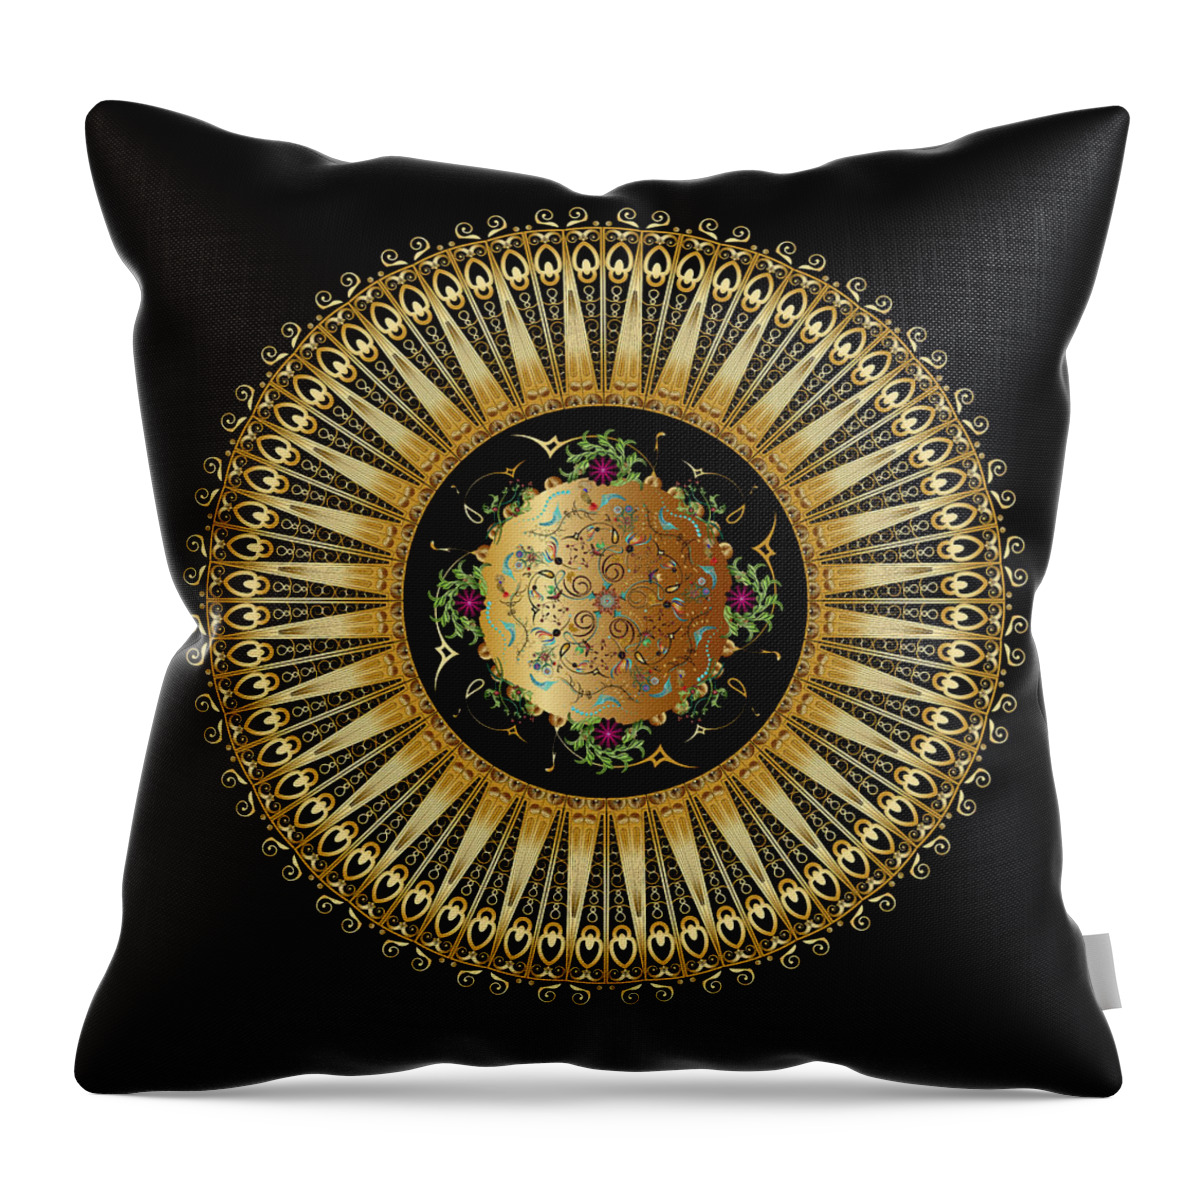 Mandala Throw Pillow featuring the digital art Circulosity No 3396 by Alan Bennington